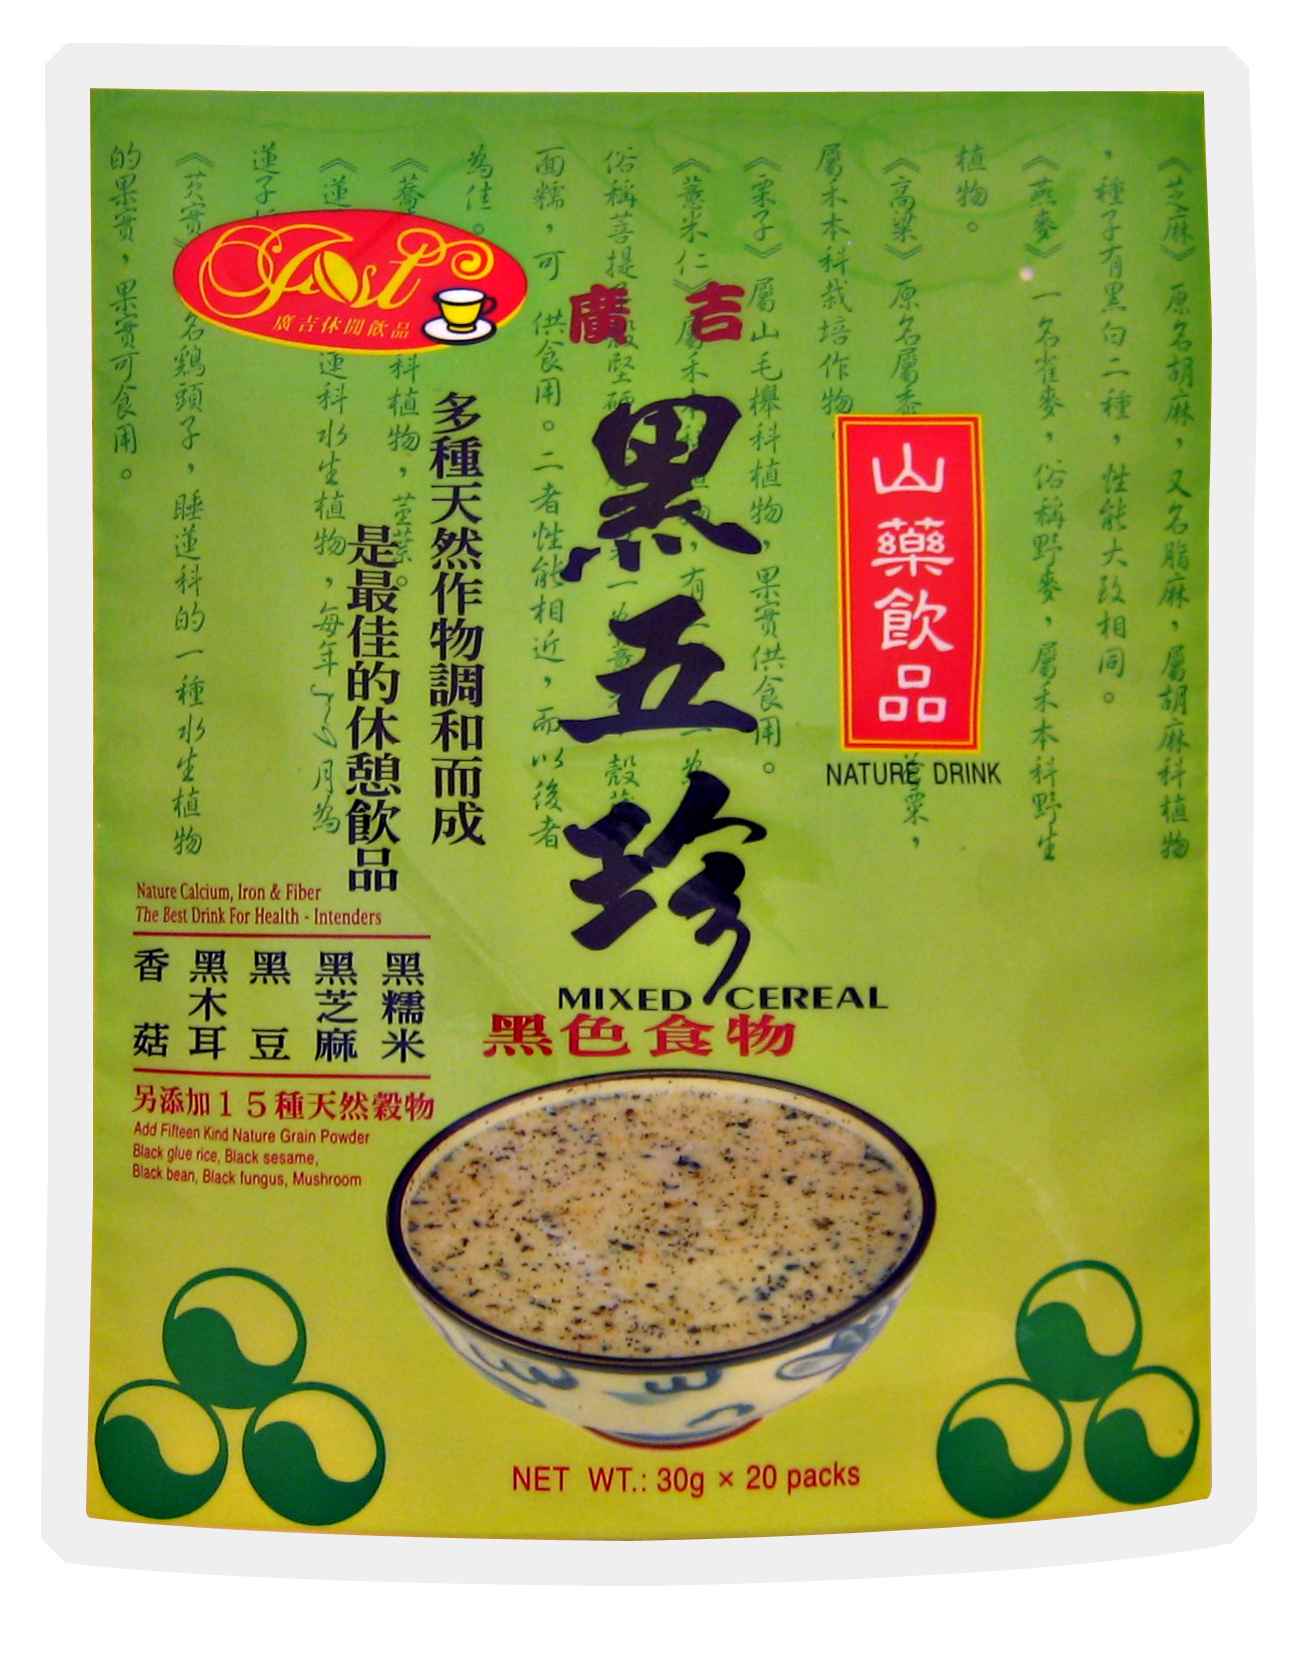 Yam Black Bean Powder/Mixed Cereal/ Oats & Pearl Barley's Powder